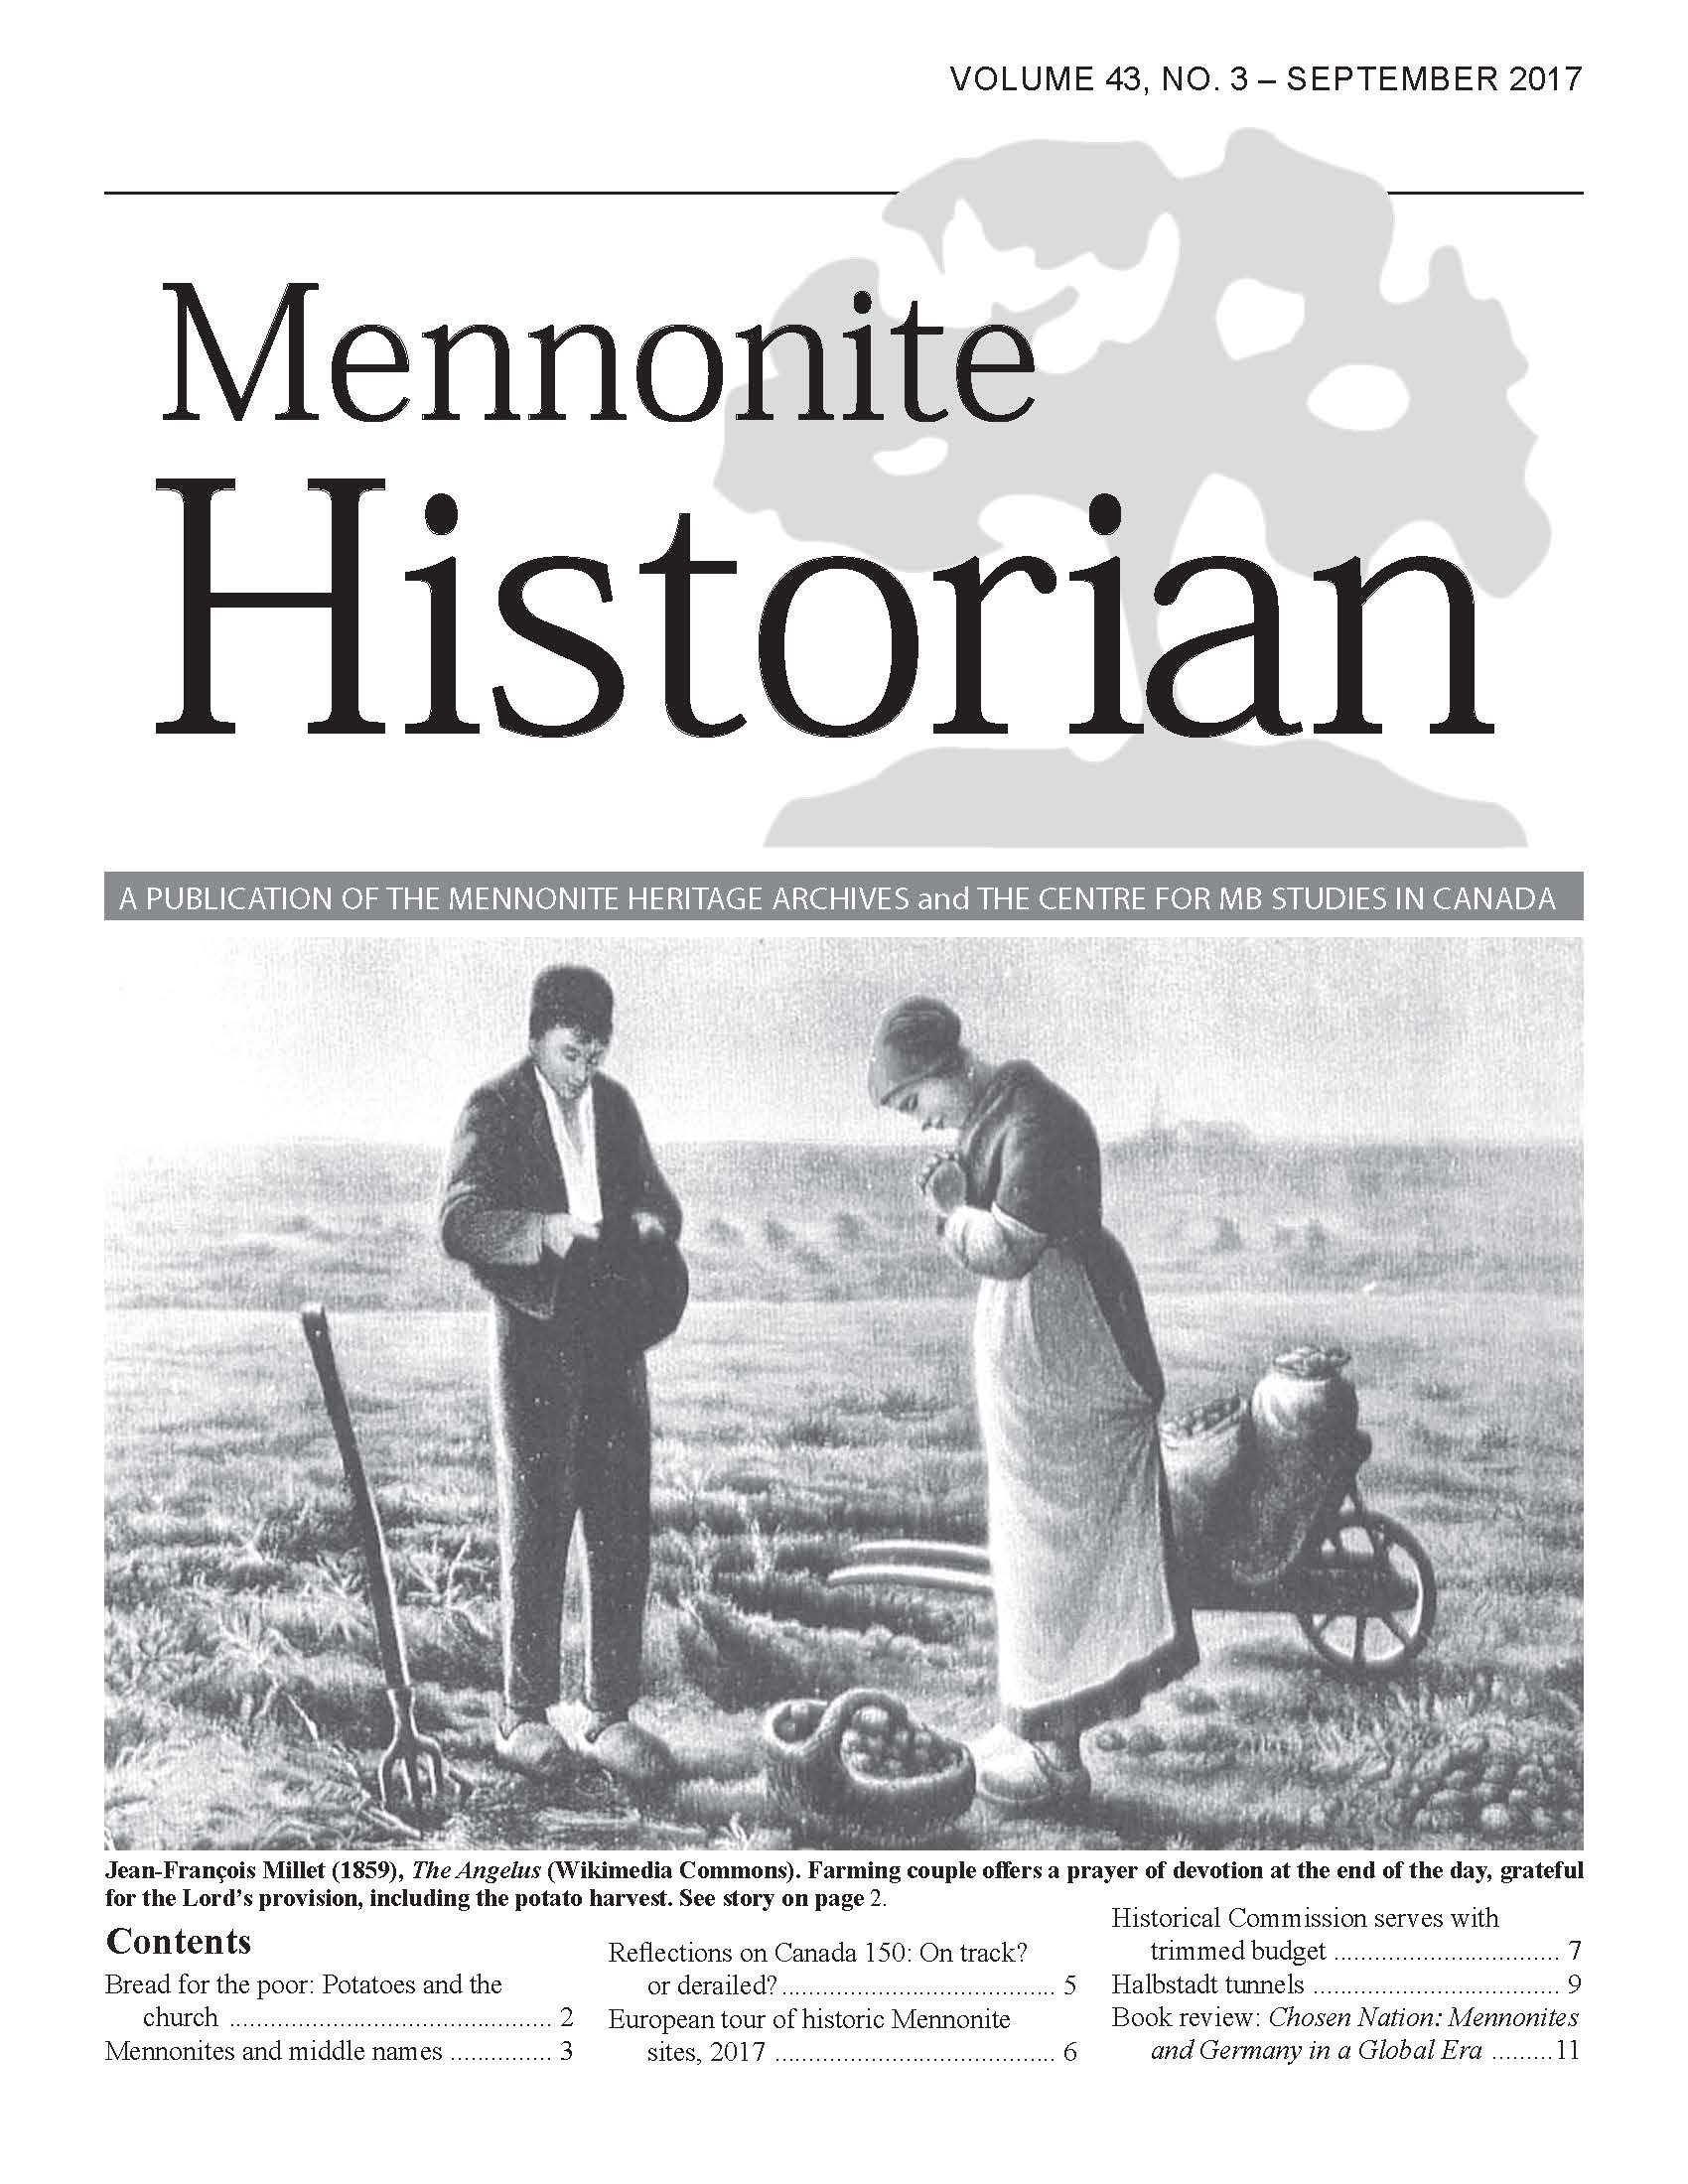 Mennonite Historian (September 2017)